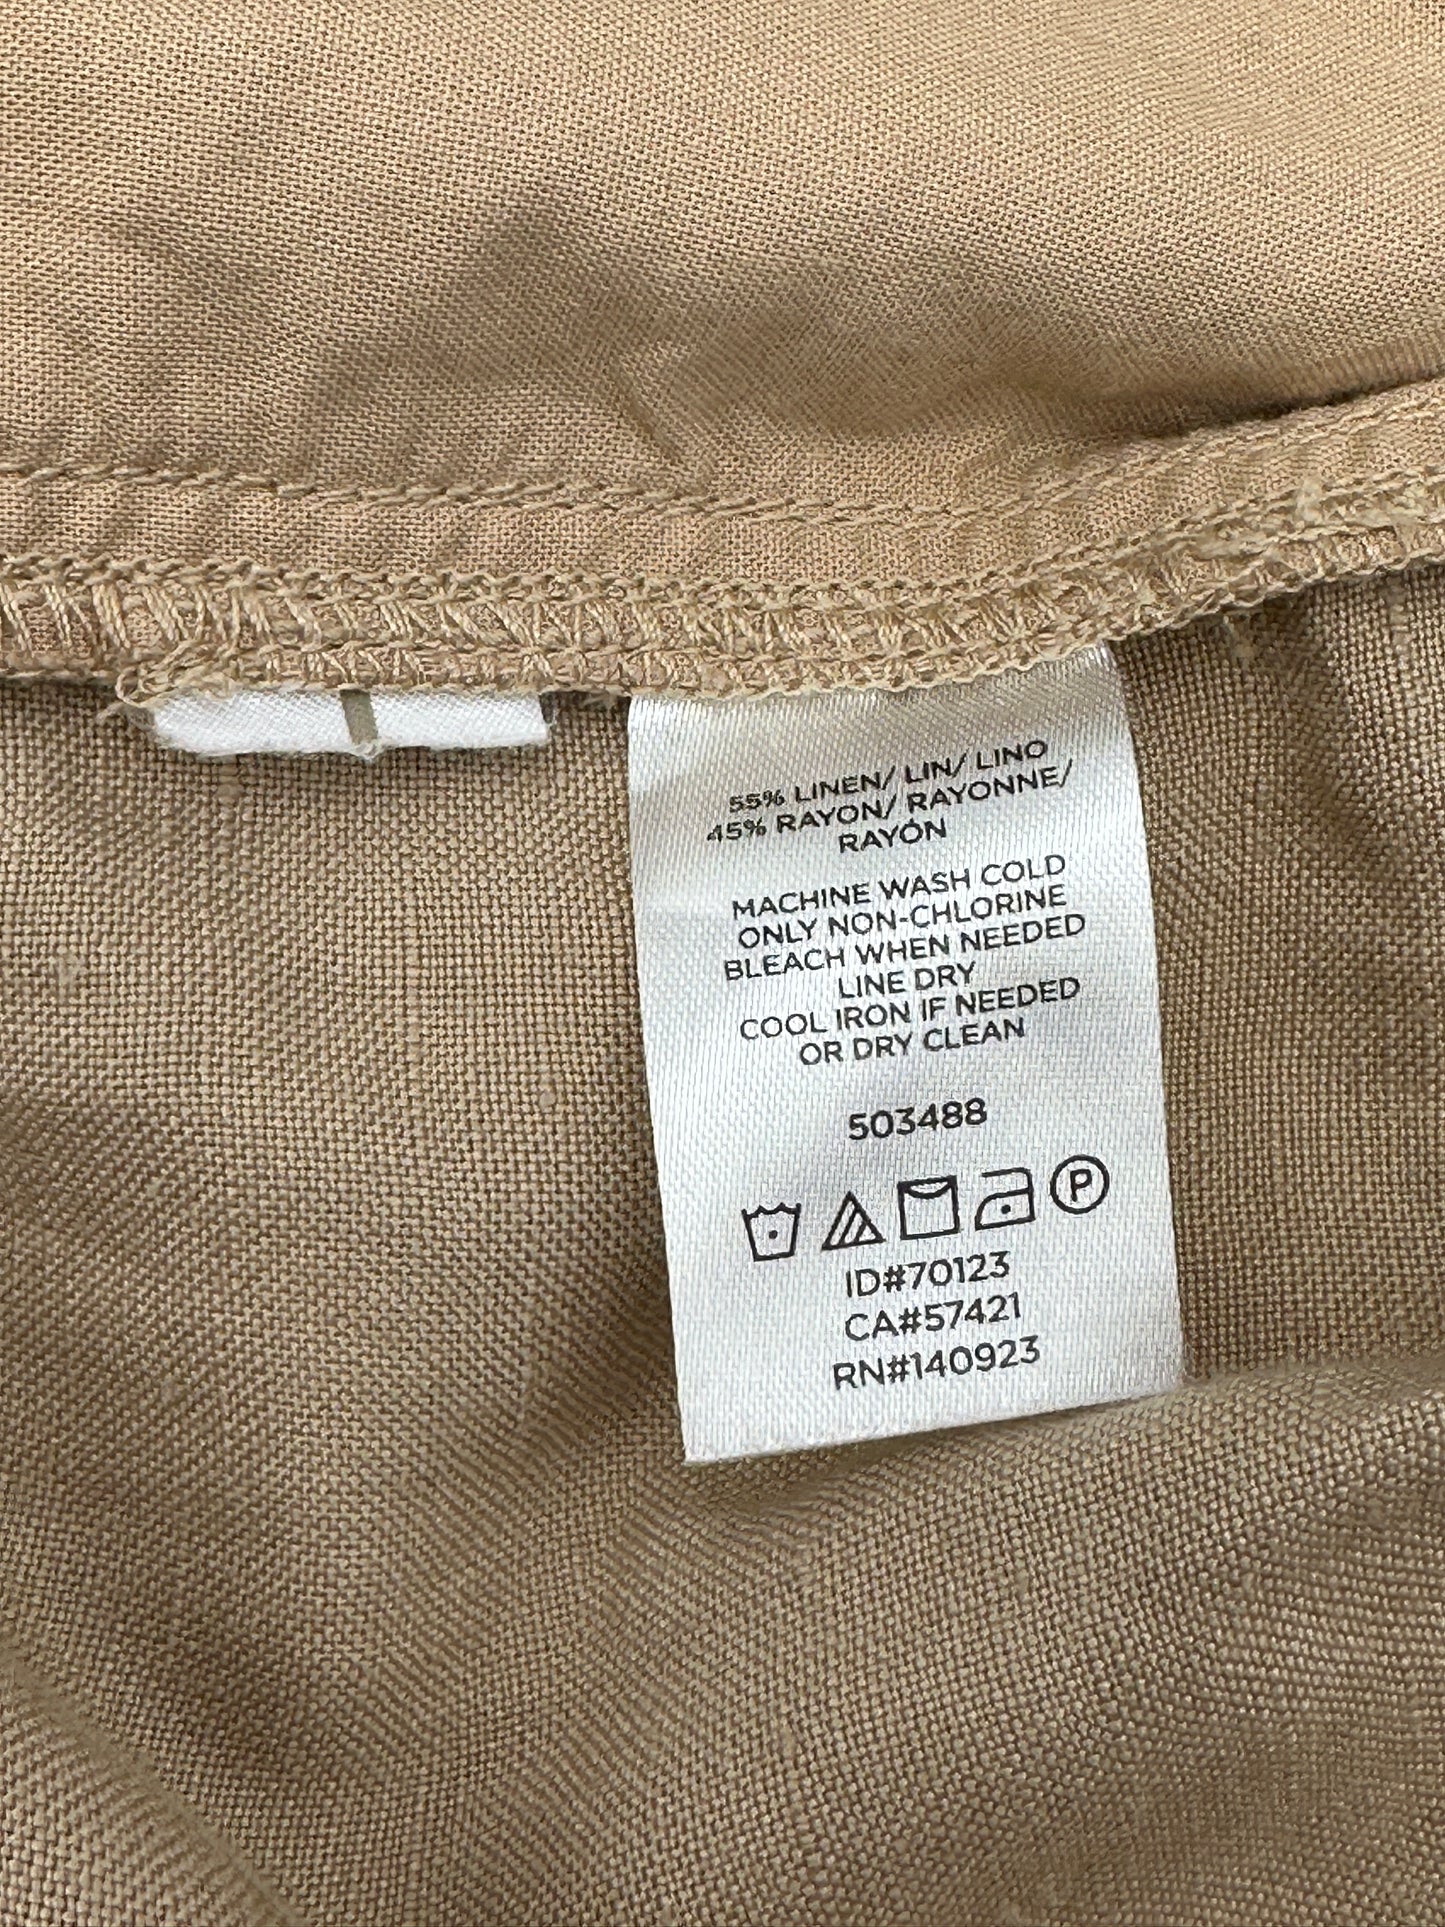 LOFT Size M Tan Linen-Blend Paper Bag Shorts